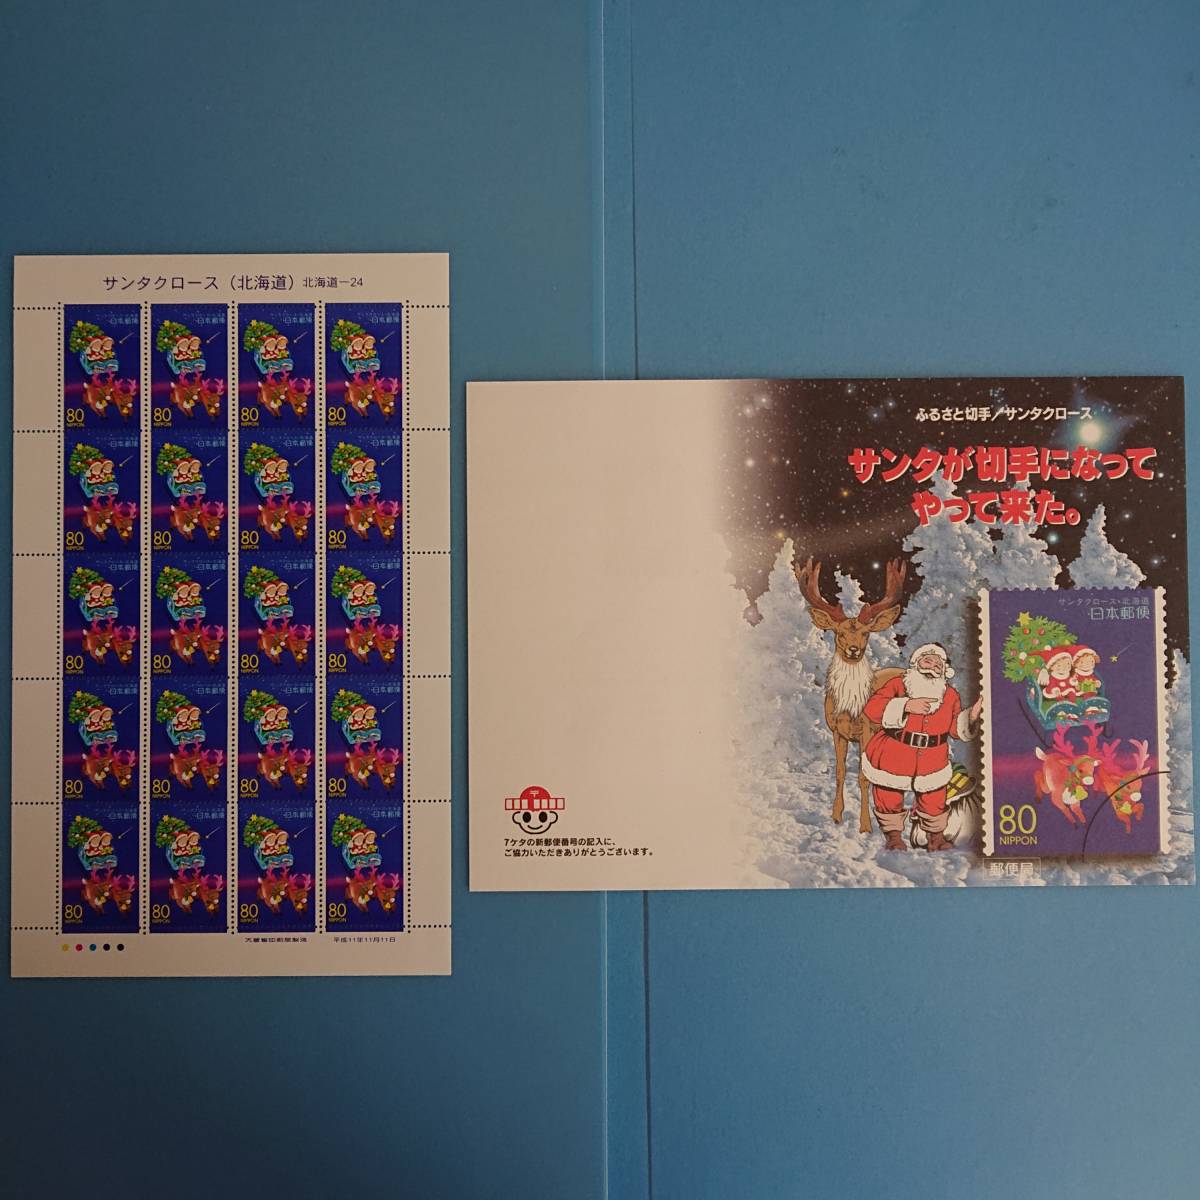  Santa Claus ( Hokkaido. Furusato Stamp ) 80 jpy ×20